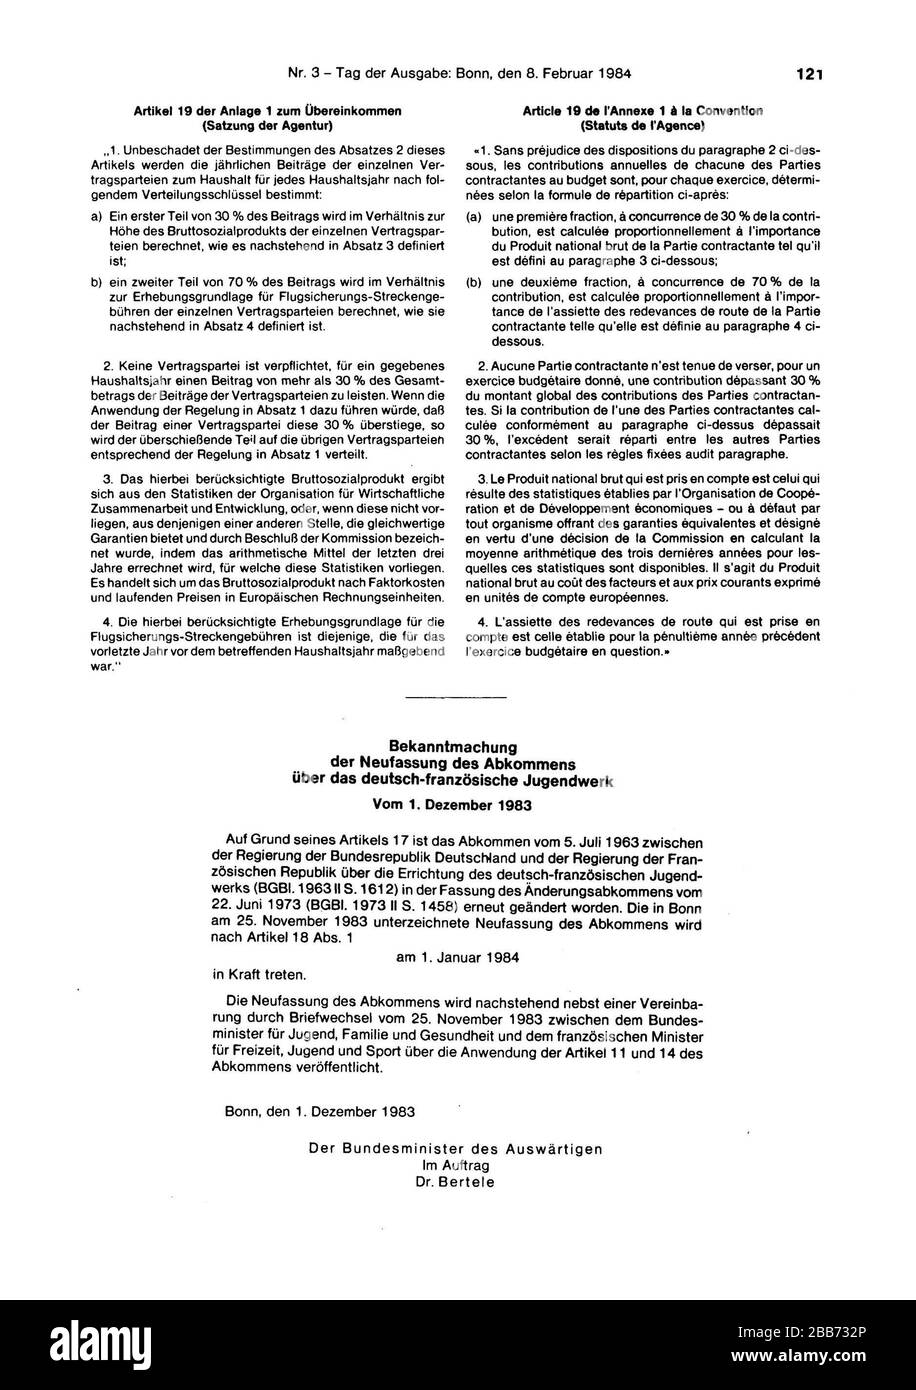 Deutsch: Neufassung des Abkommens vom 22. Juni 1973 zur Änderung des  Abkommens vom 5. Juli 1963 zwischen der Regierung der Bundesrepublik  Deutschland und der Regierung der Französischen Republik über die  Errichtung des